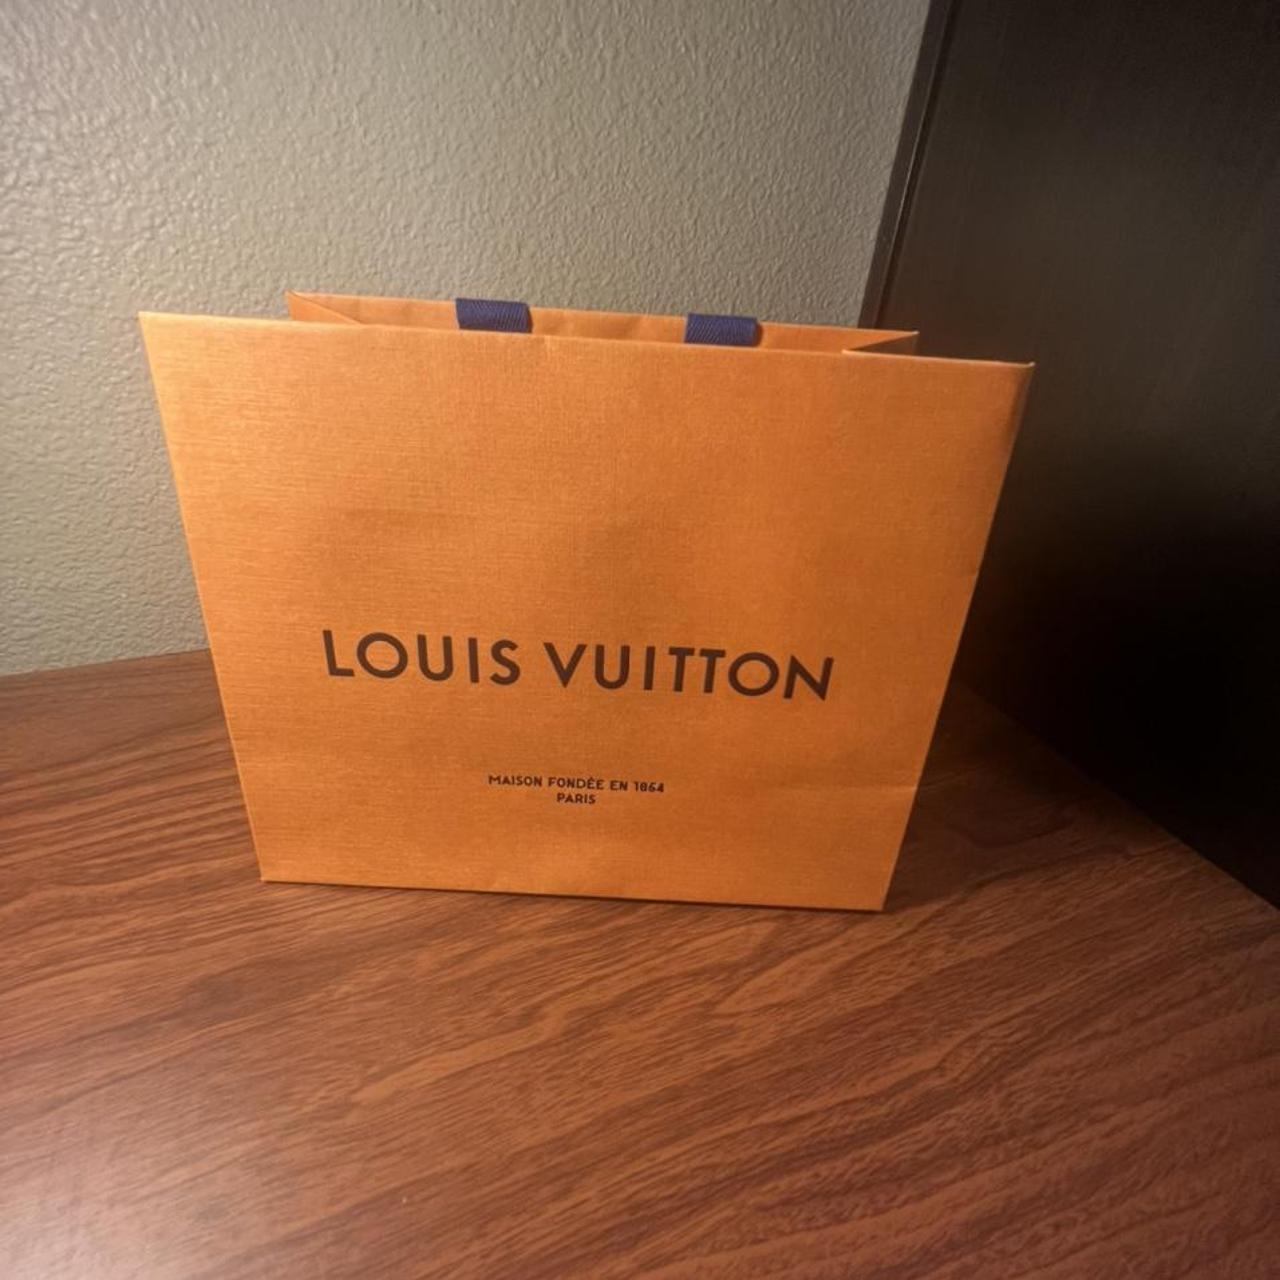 Authentic Louis Vuitton shopping bag repurposed  Louis vuitton, Vuitton,  Authentic louis vuitton